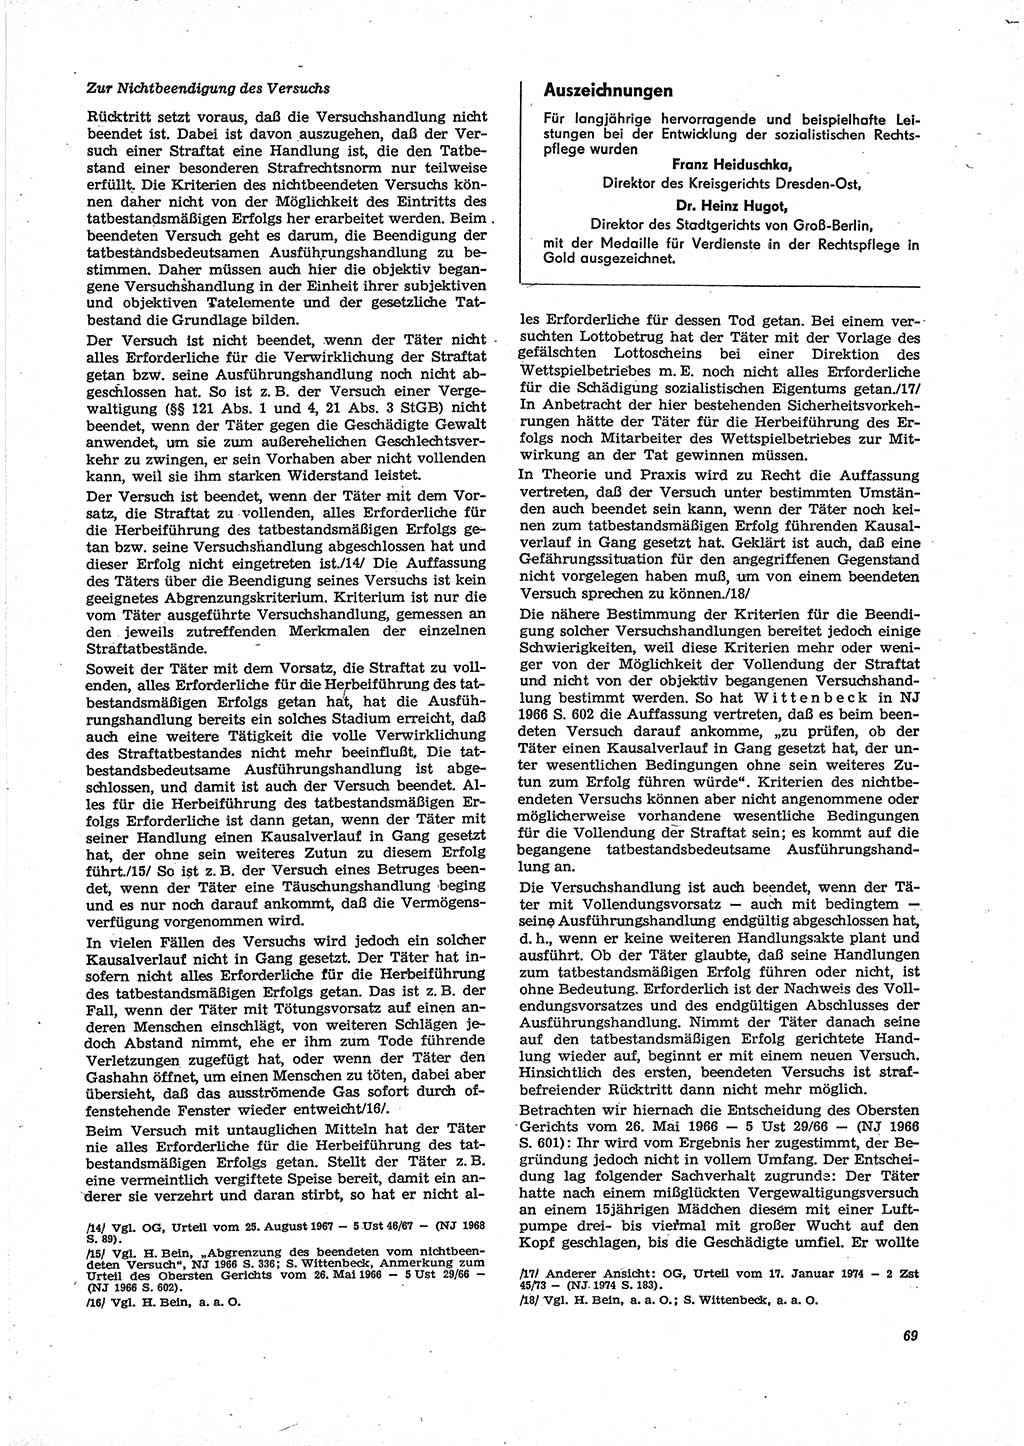 Neue Justiz (NJ), Zeitschrift für Recht und Rechtswissenschaft [Deutsche Demokratische Republik (DDR)], 29. Jahrgang 1975, Seite 69 (NJ DDR 1975, S. 69)